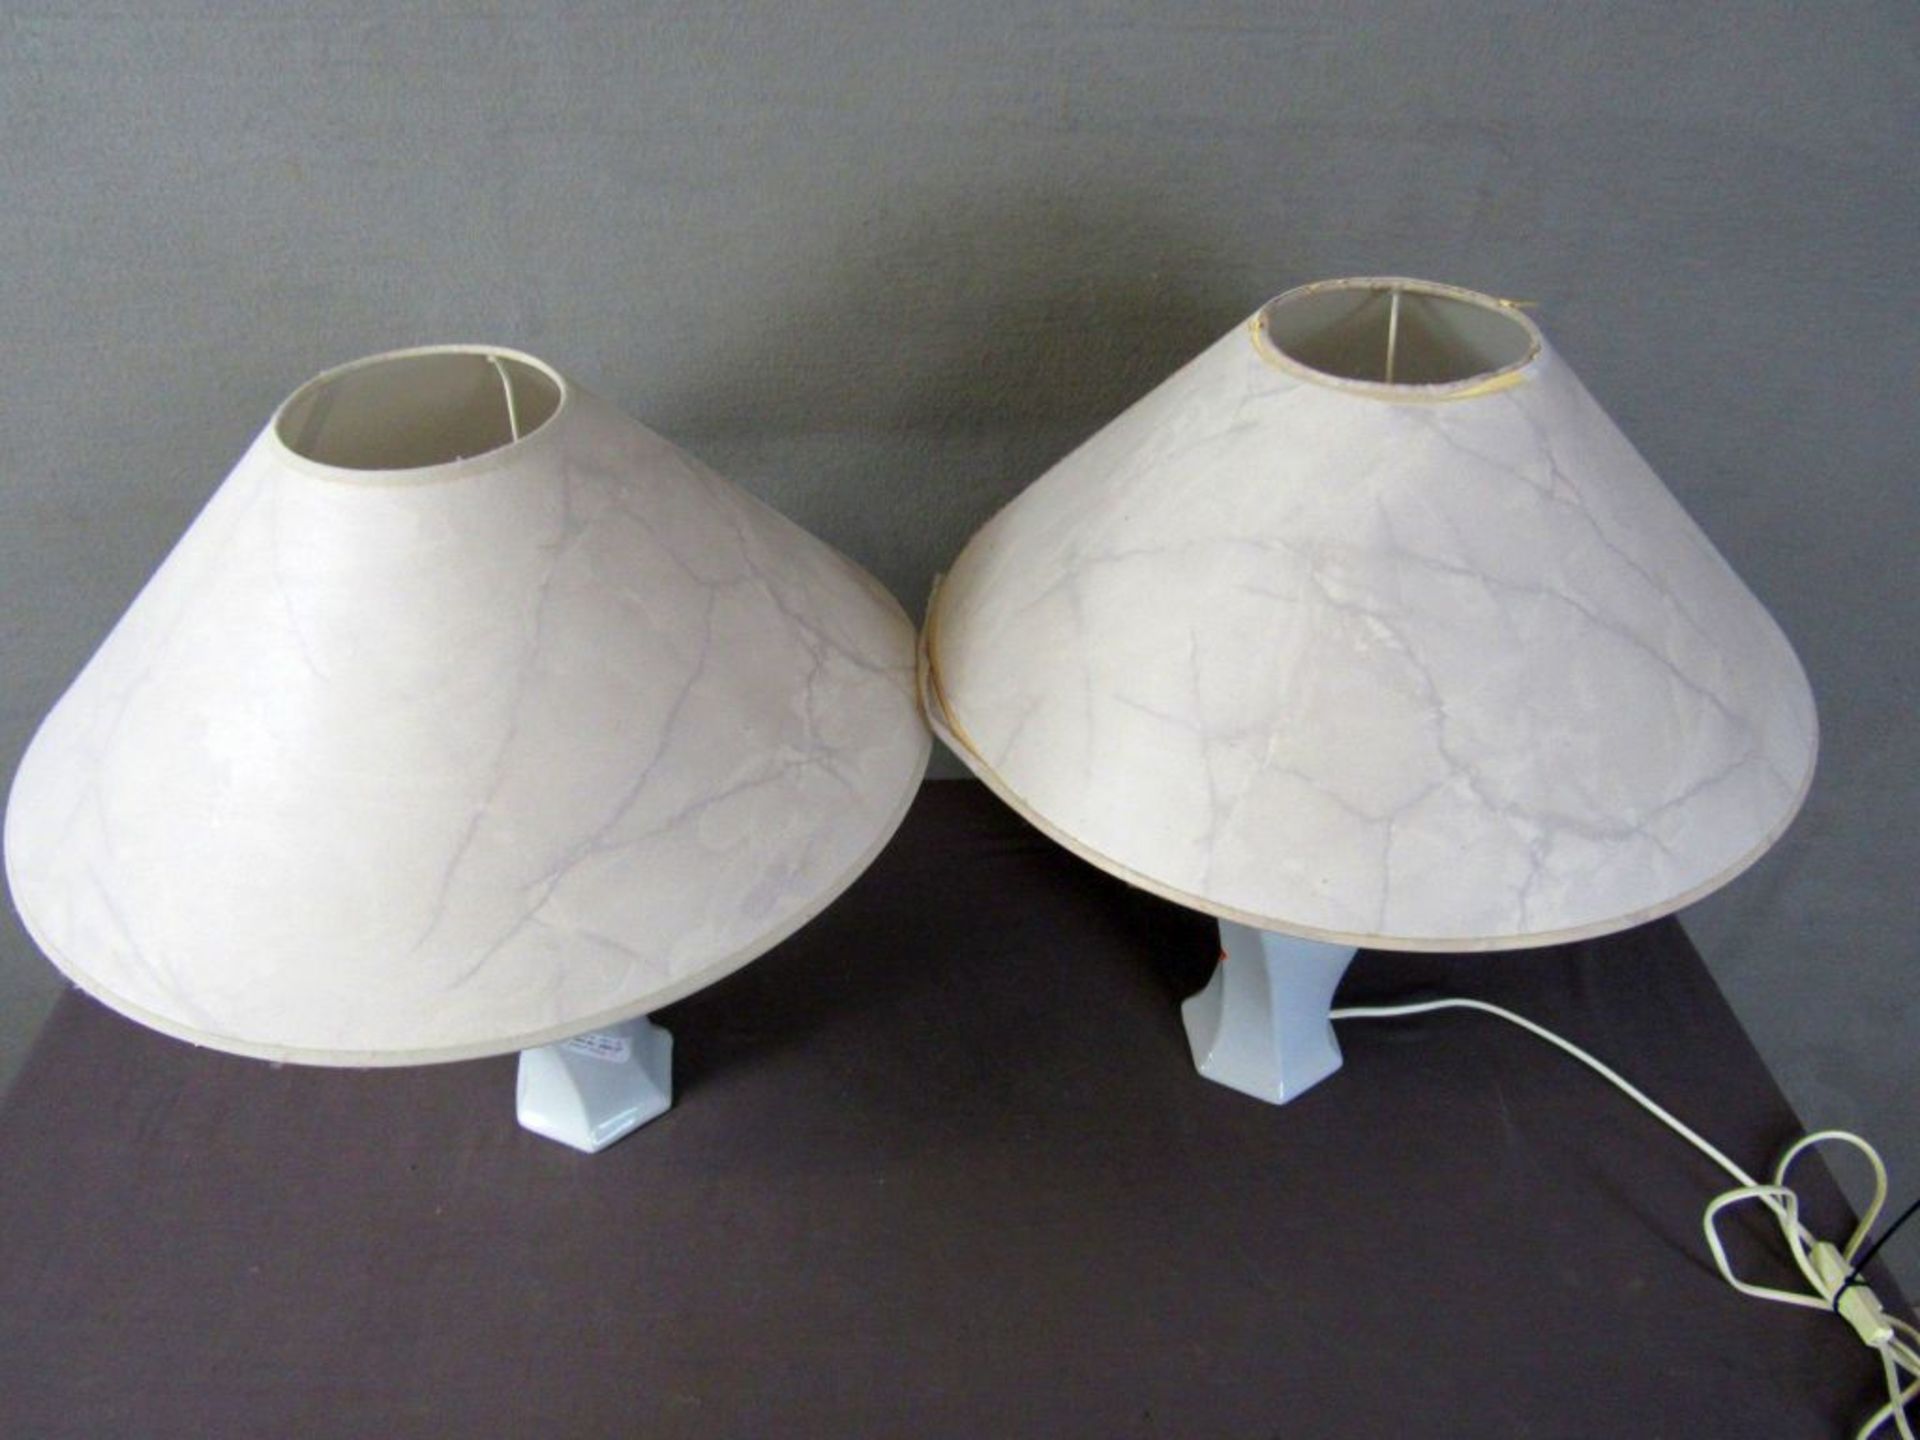 Zwei Tischlampen 50cm hoch - Image 2 of 5